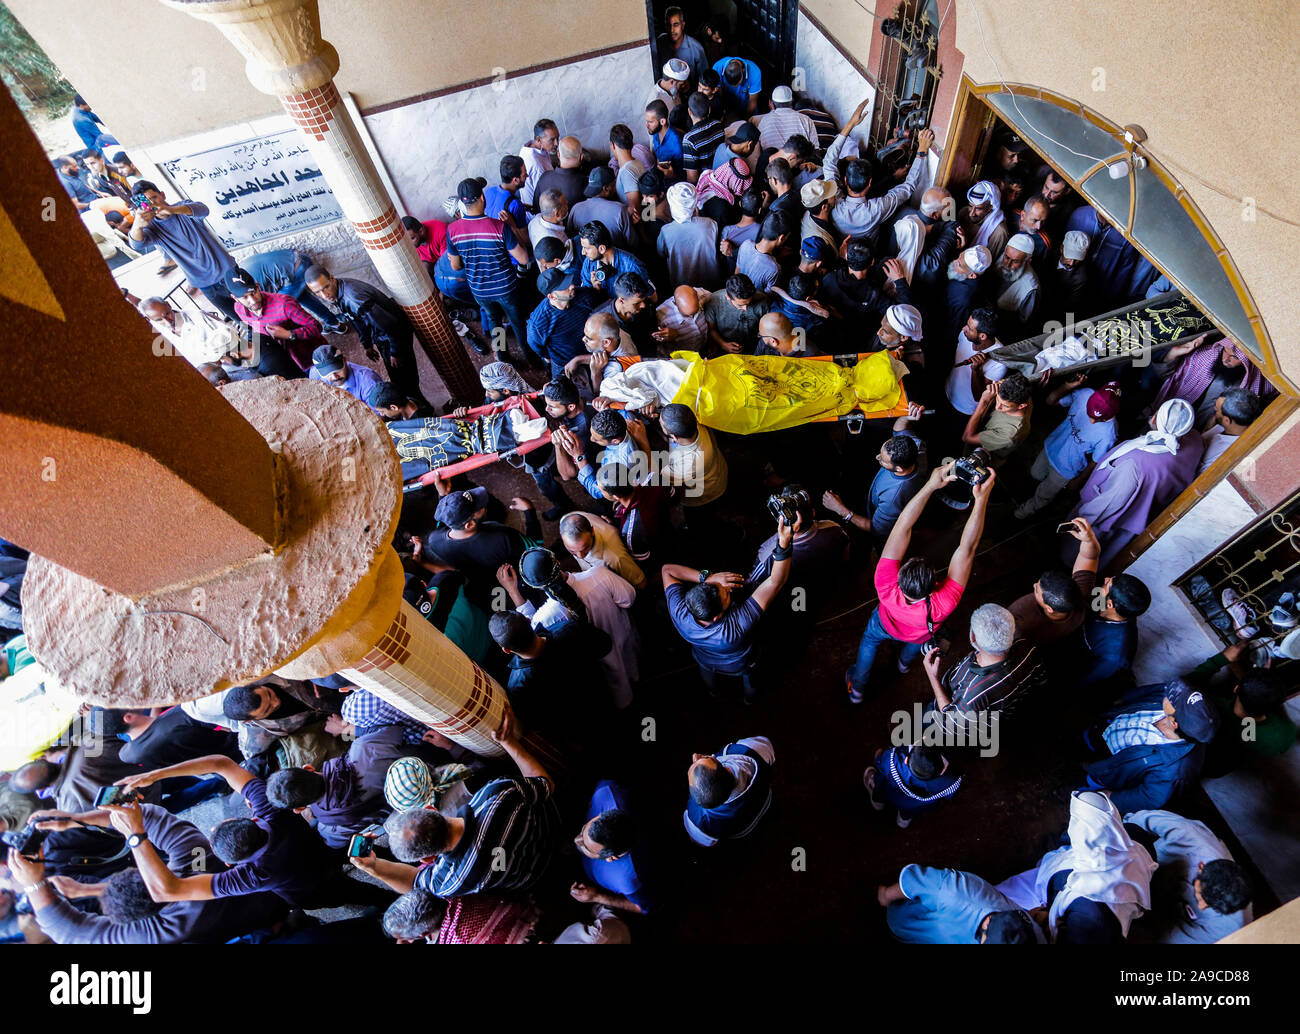 (EDITOR'S NOTE: Bild zeigt Tod) Palästinensische trauernde durchführen, die Körper von Rasmi Abu Malhous und sieben Mitglieder seiner Familie während der Trauerfeier in einer Moschee in Deir al-Balah, zentralen Gazastreifen. Die Verstorbenen wurden in einer Nacht israelischen Raketenangriff, dass Ihr Haus gezielt getötet. Stockfoto